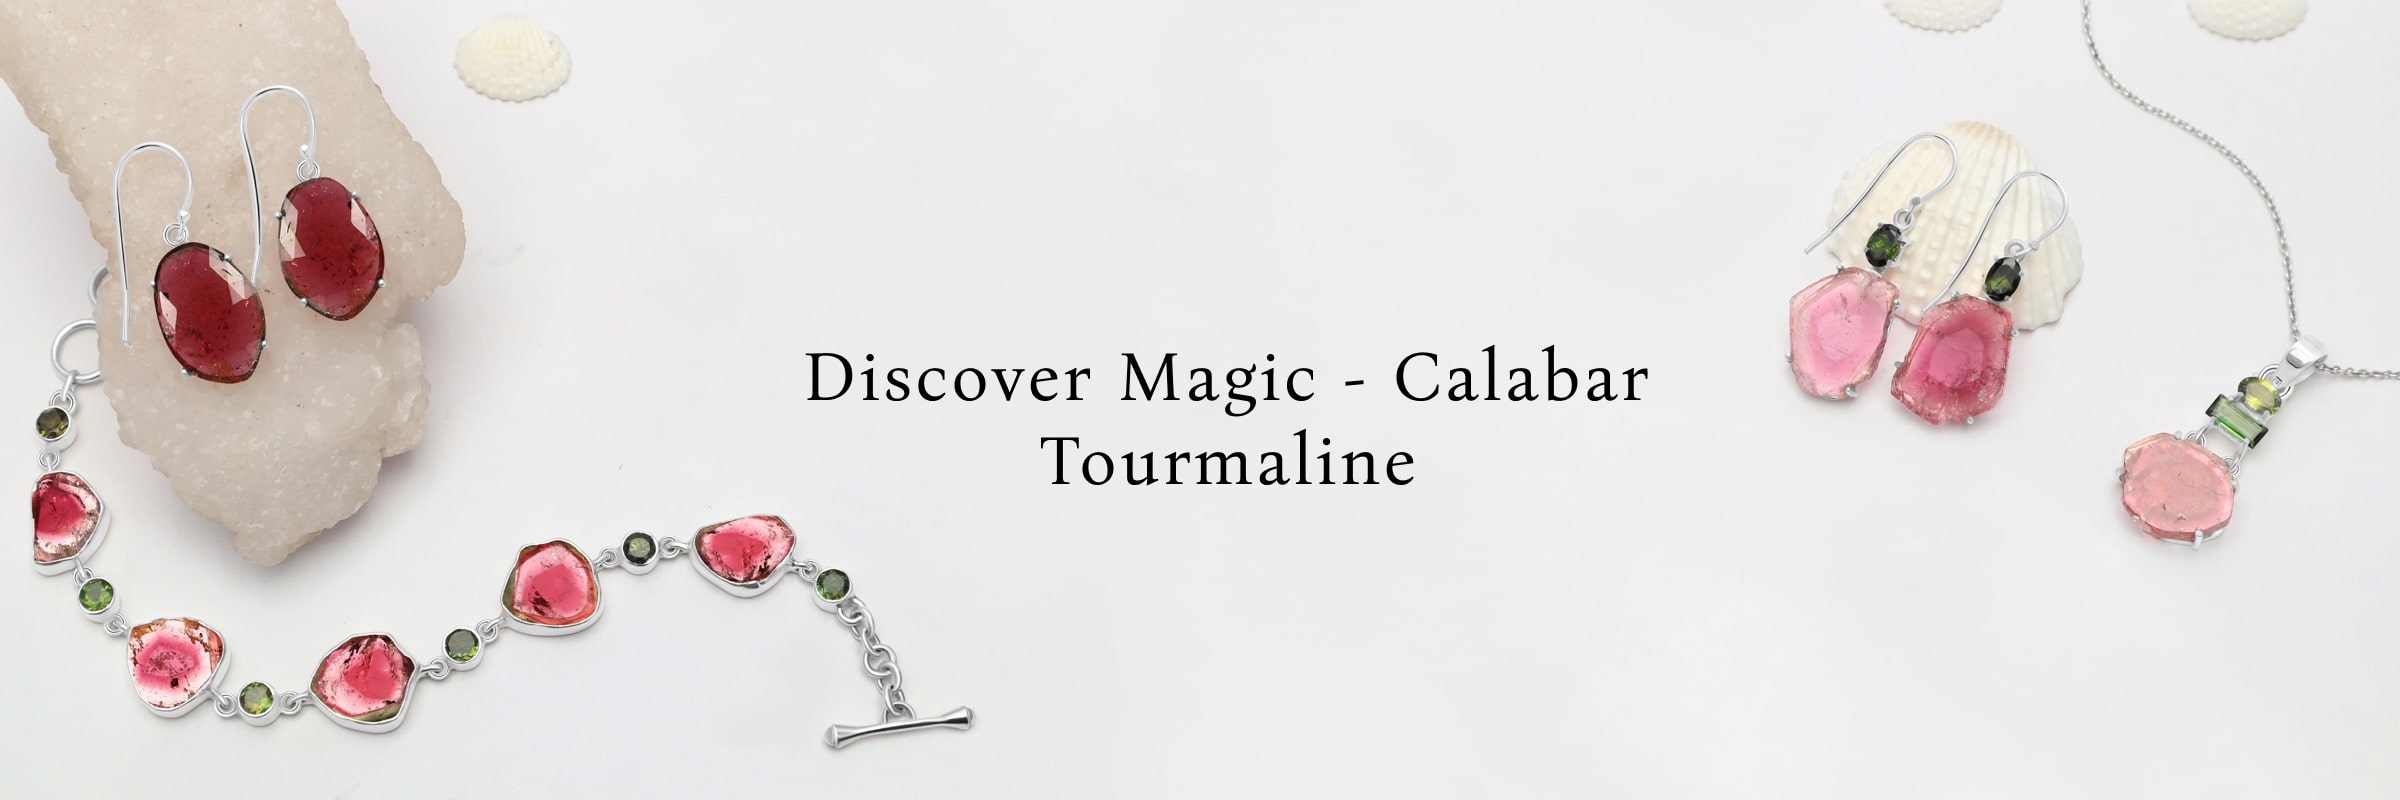 Discovering Calabar Tourmaline's Magic